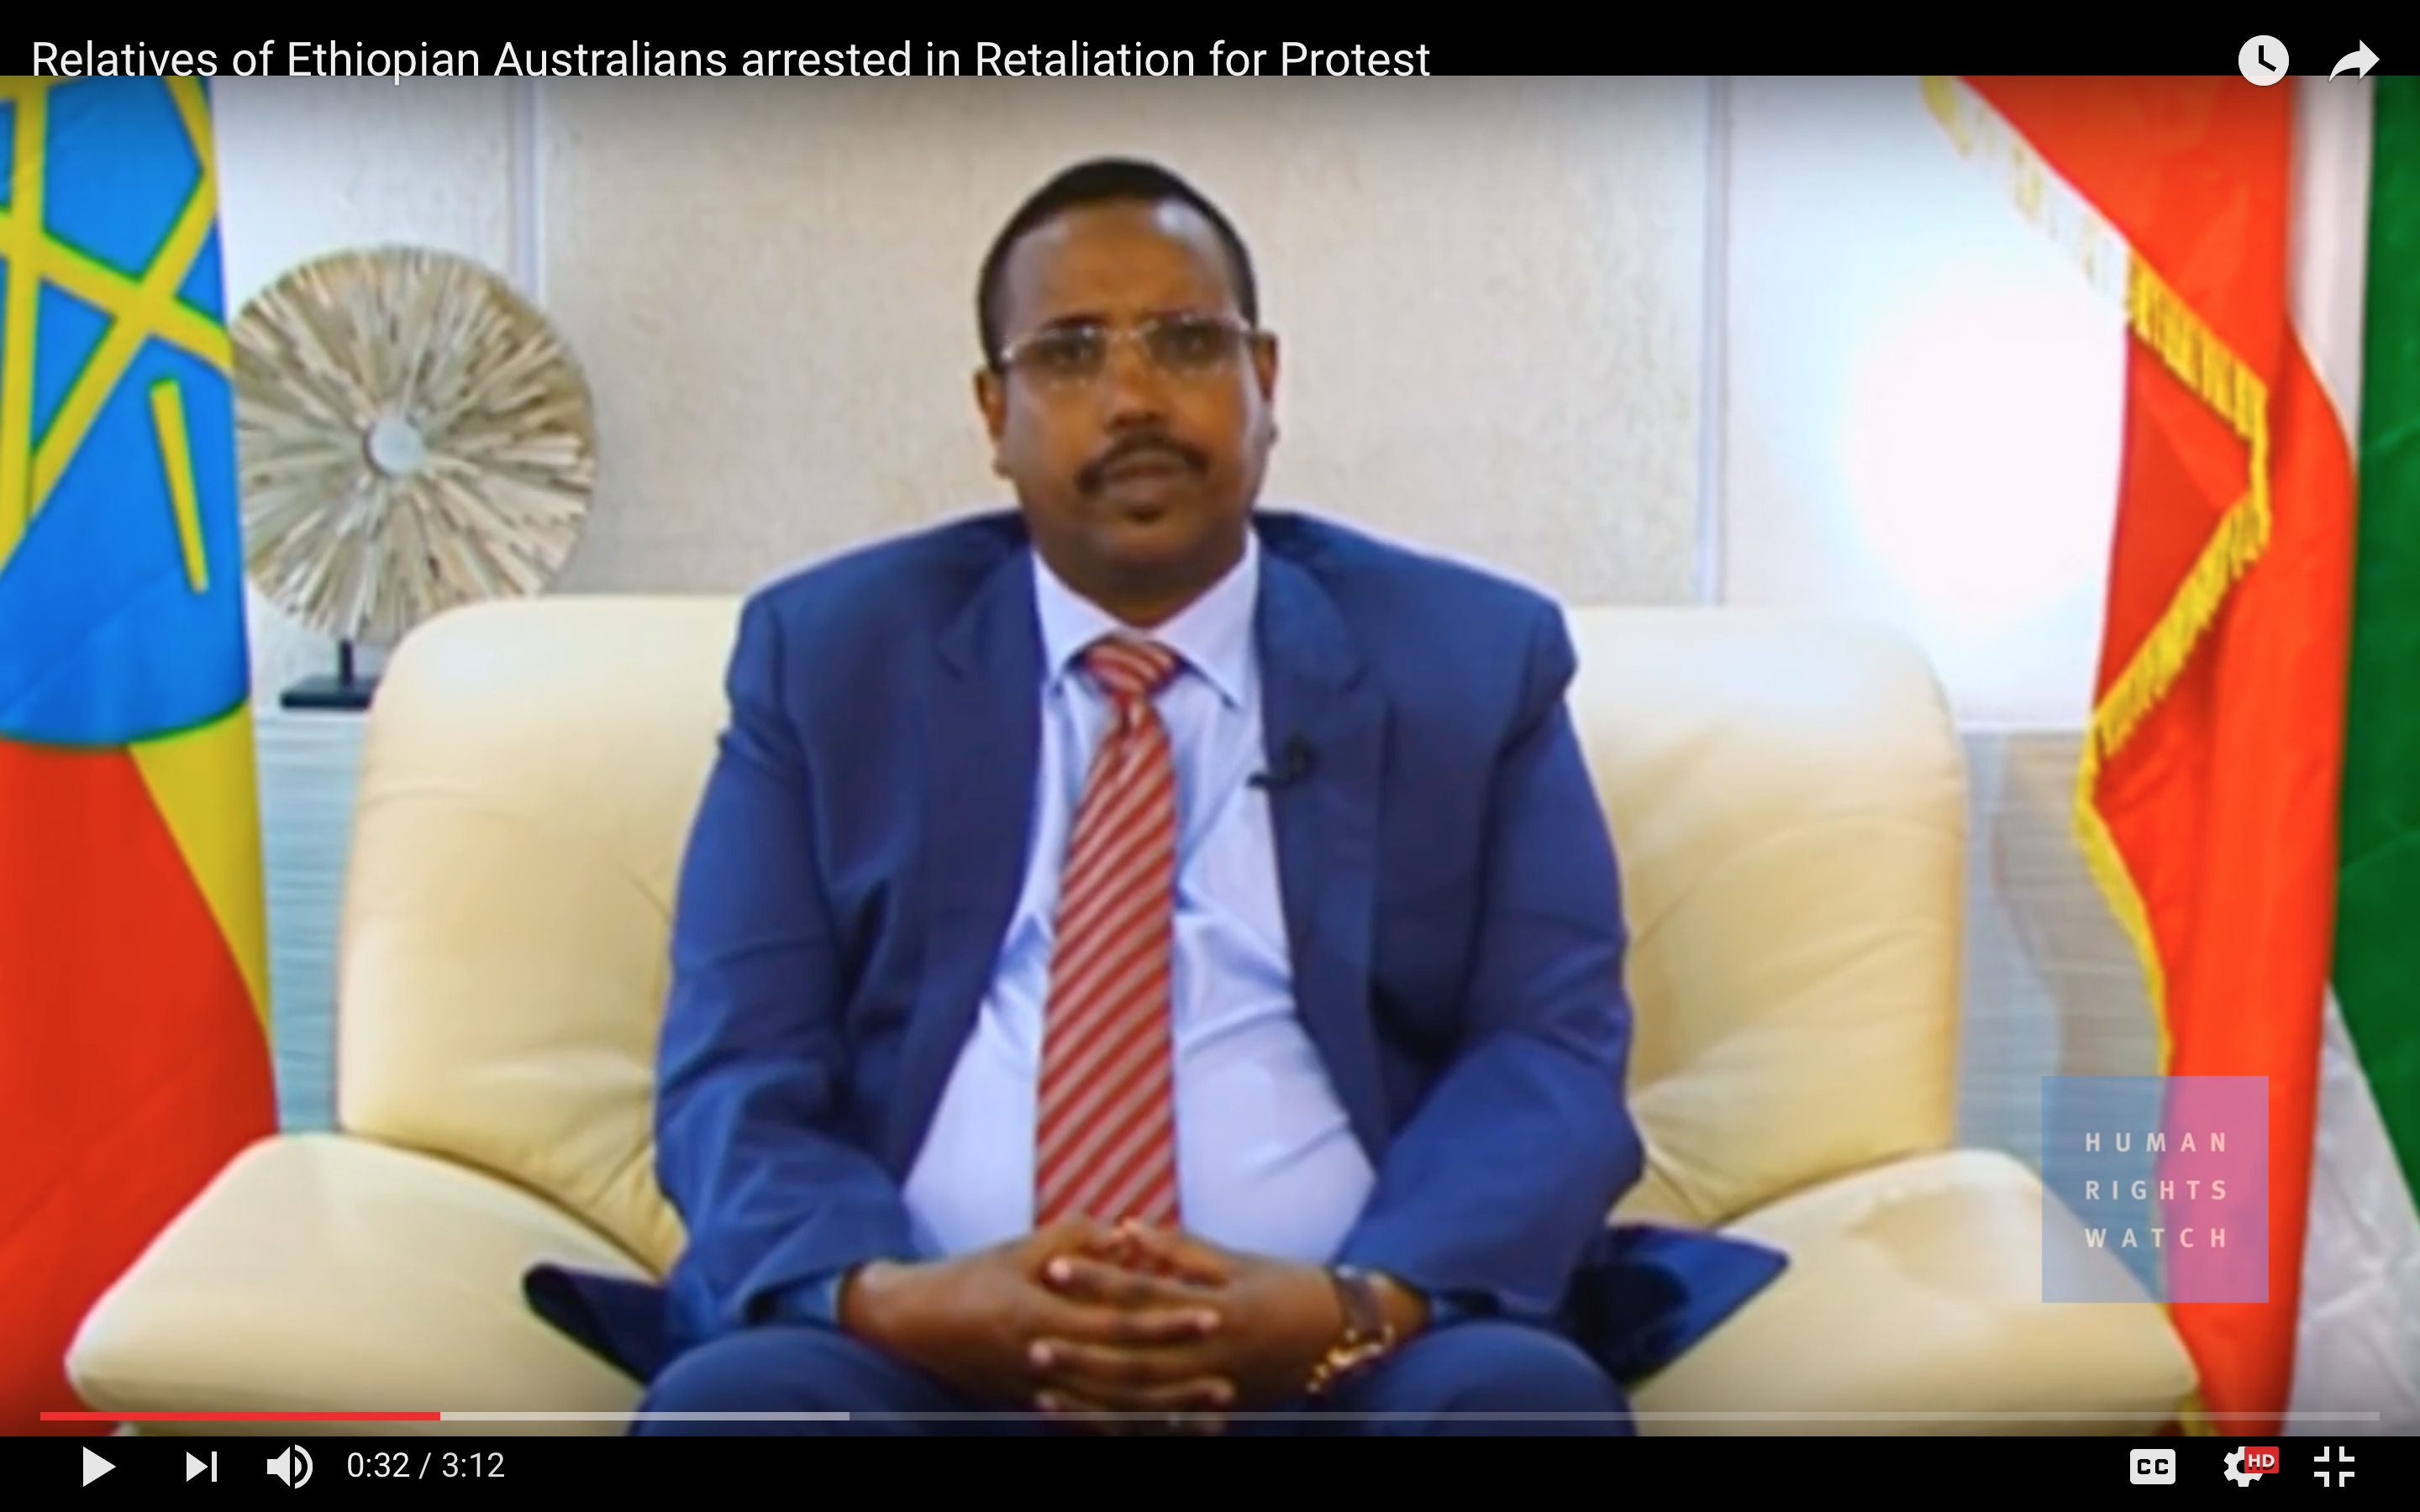 Australia: Protests Prompt Ethiopia Reprisals